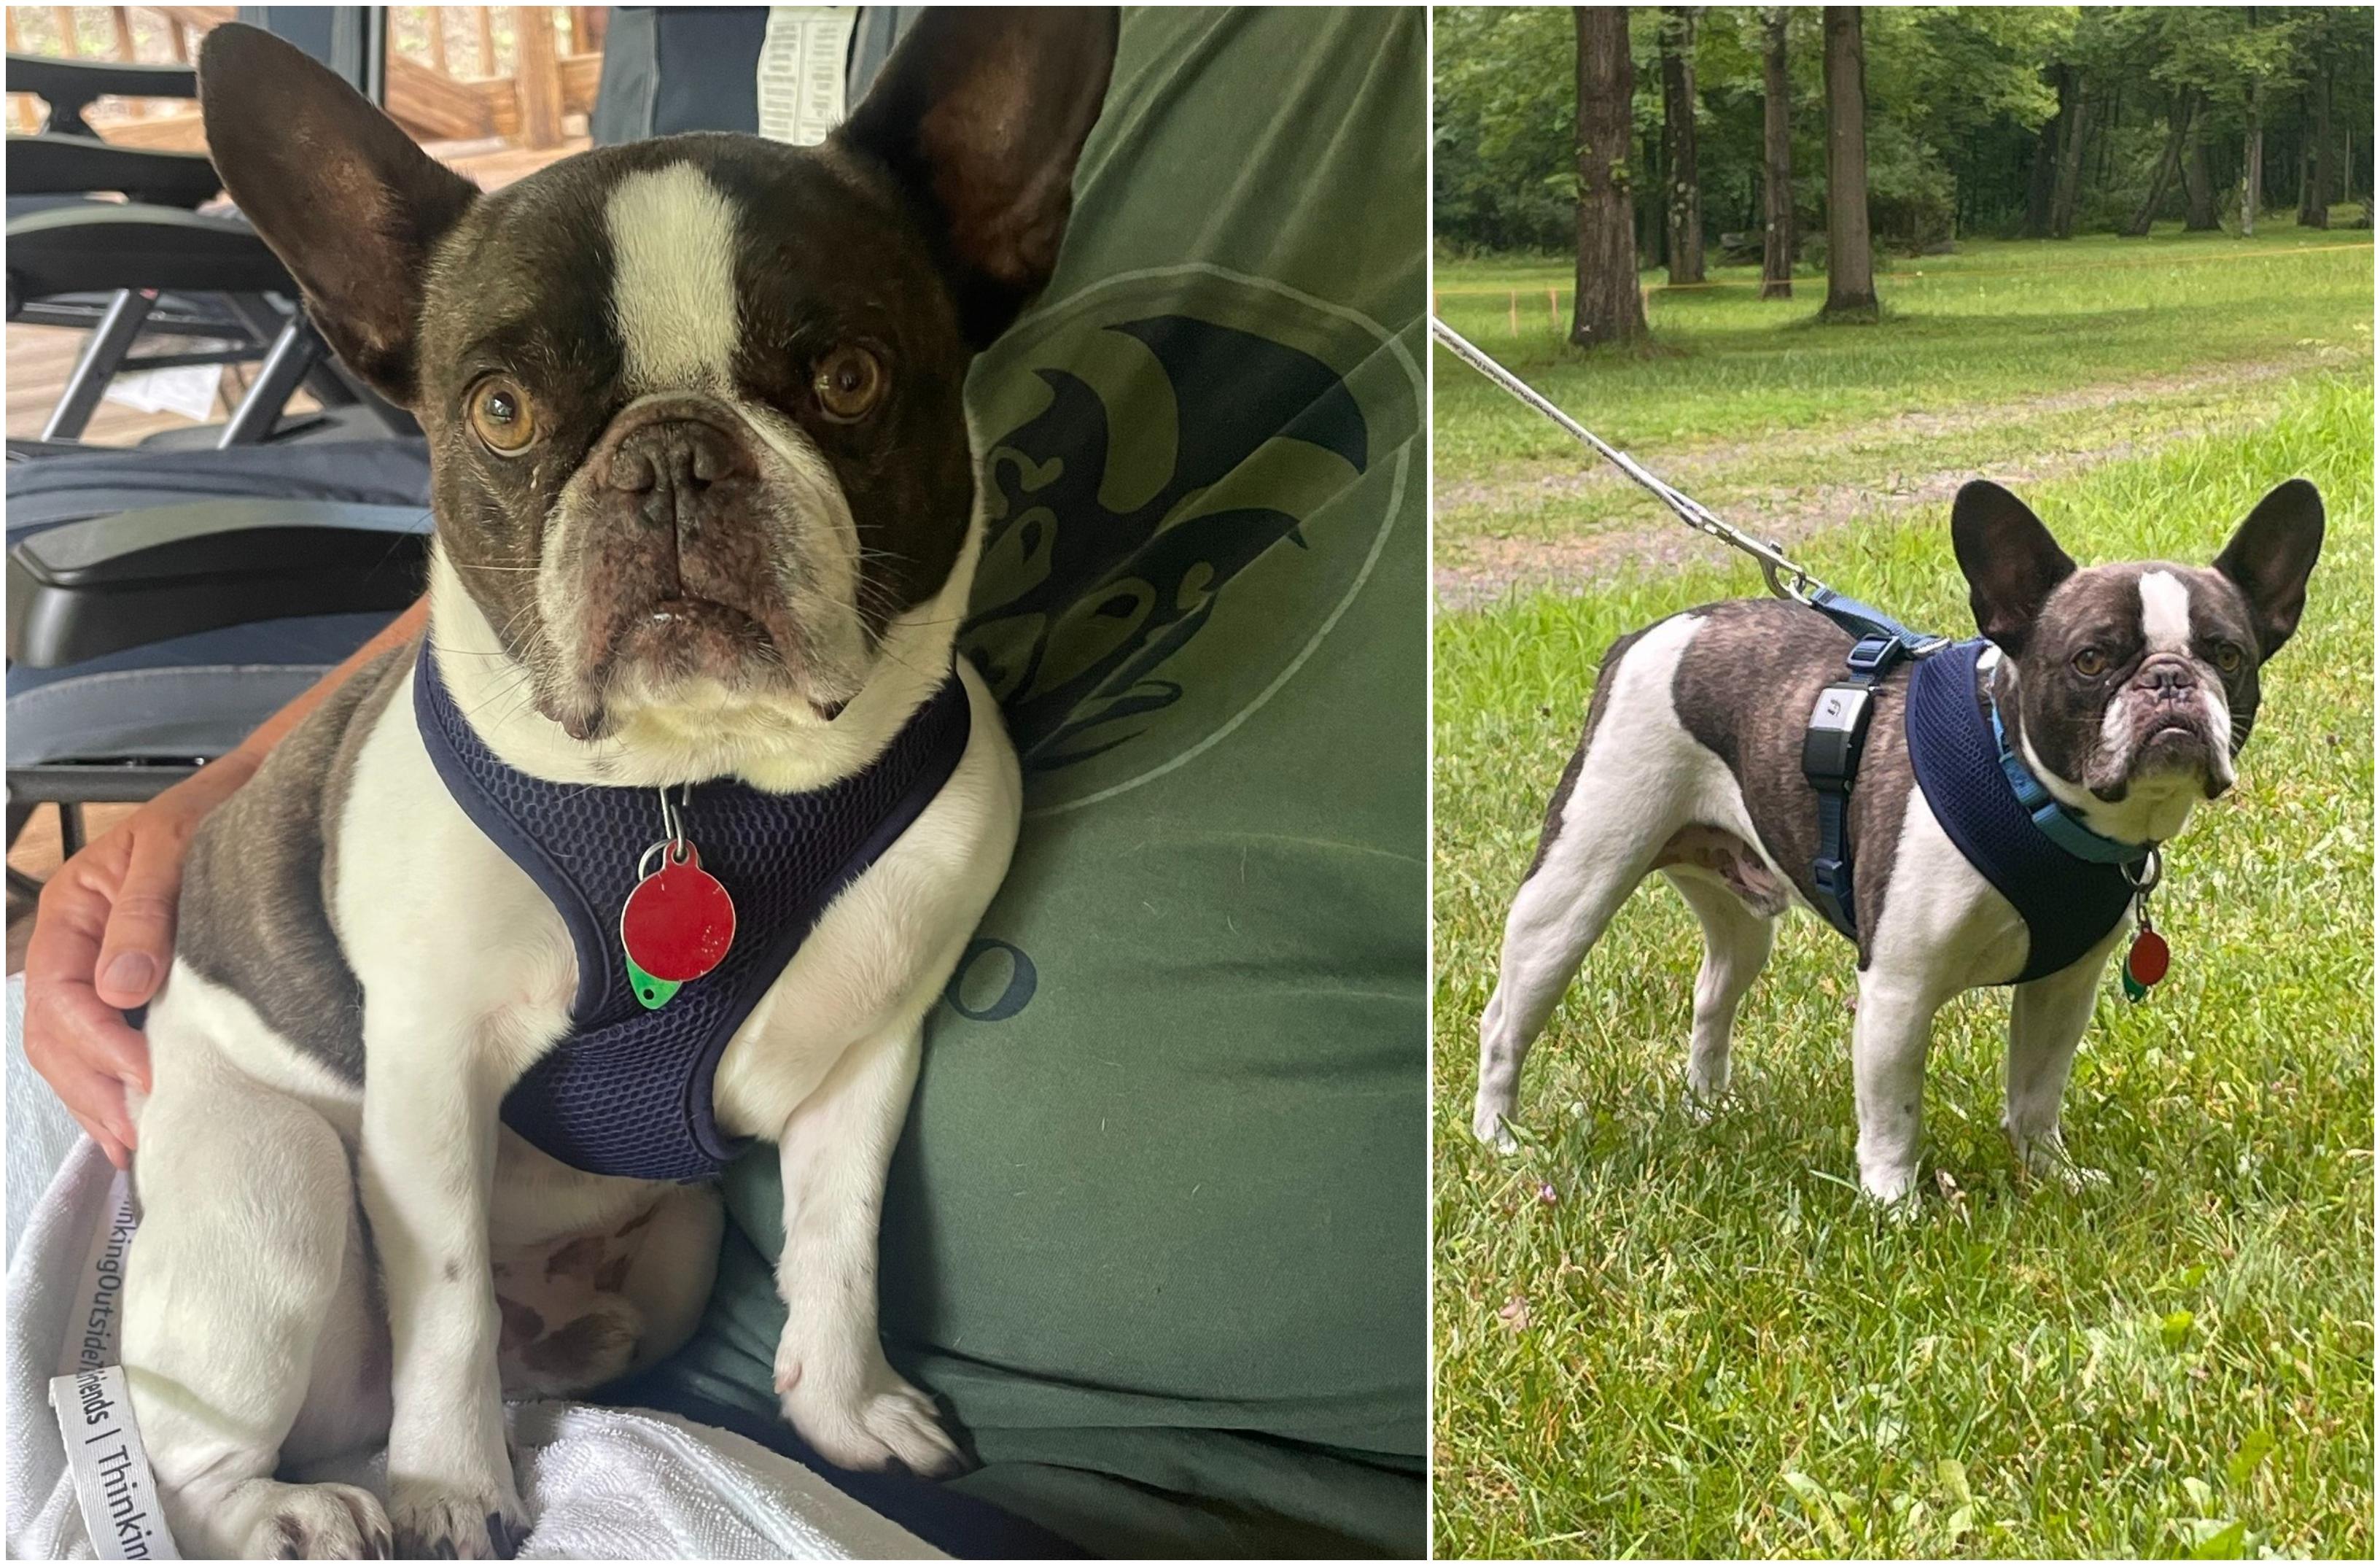 Bulldog, salvat după ce a fost abandonat pe un aeroport în SUA. Proprietara l-a părăsit când a aflat că nu-l poate lua în avion